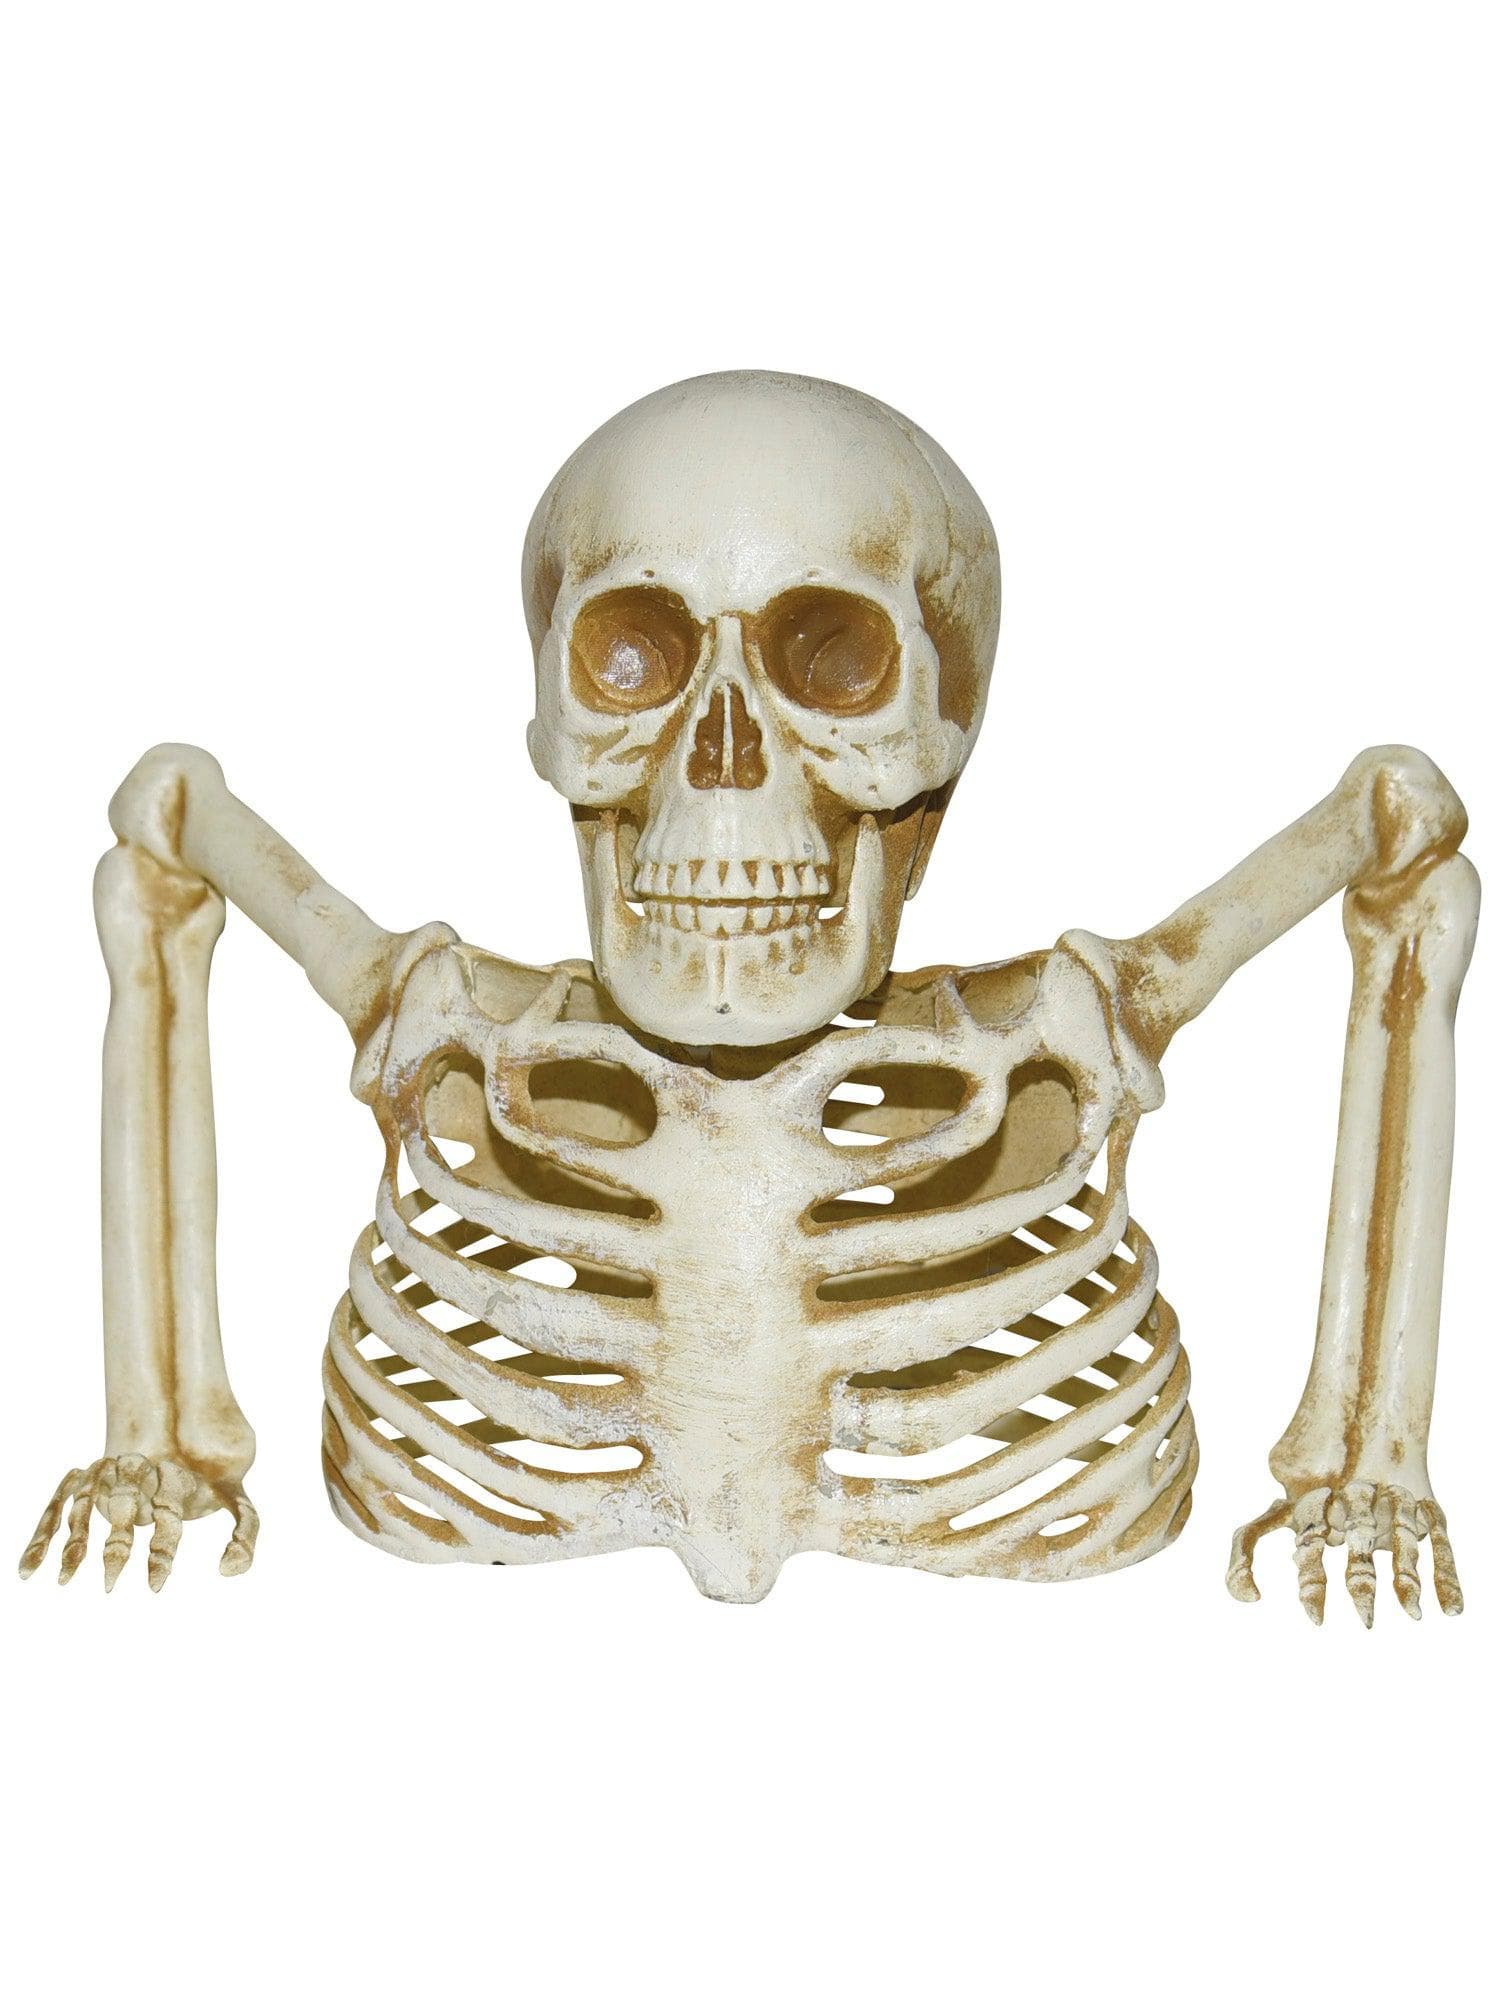 8 Inch Groundbreaker Skeleton Prop - costumes.com